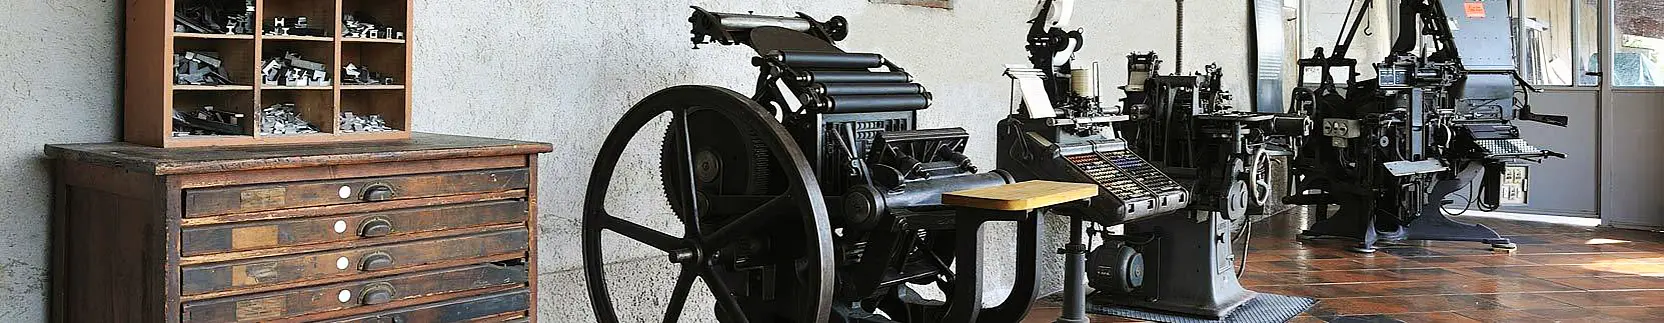 The International Printing Museum in Urbino